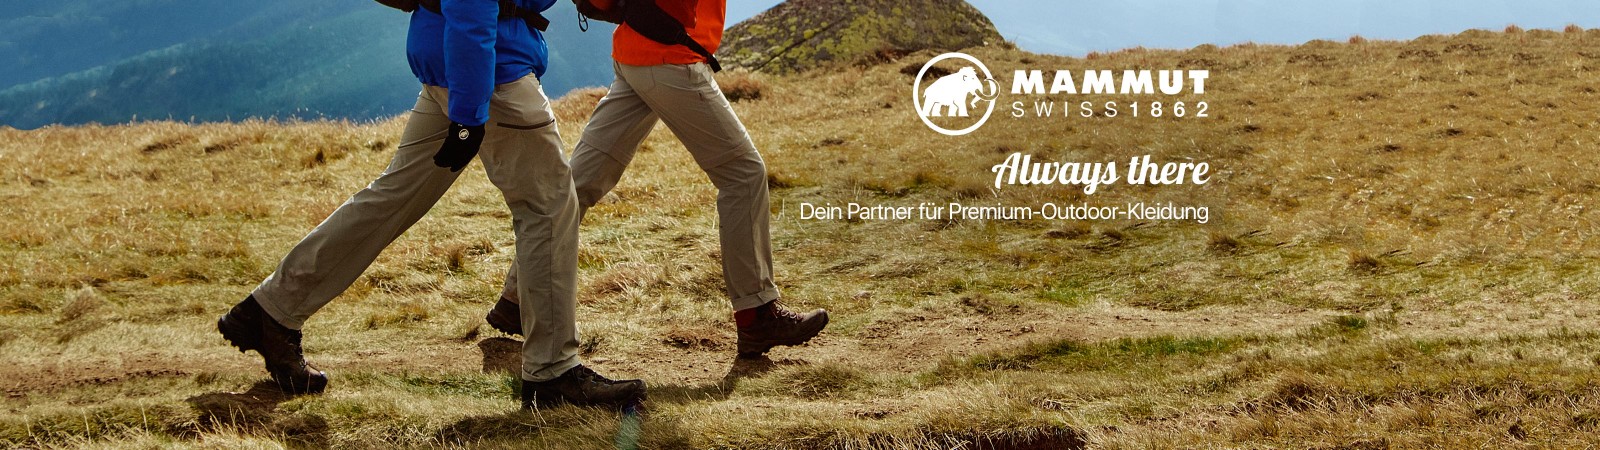 Always there - Mammut ist dein Partner für Premium-Outdoor-Kleidung.